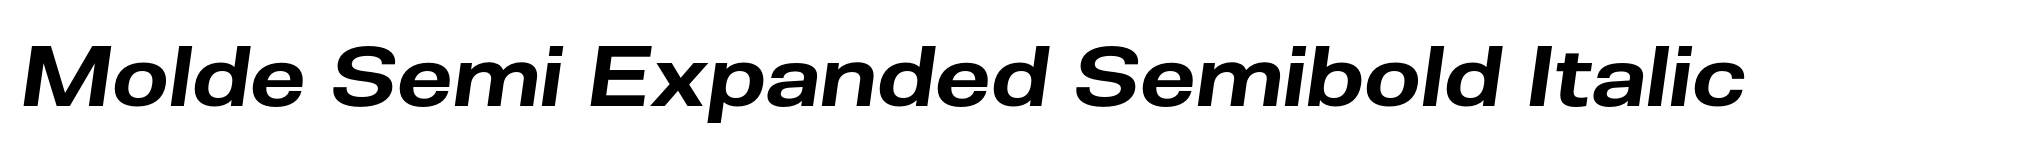 Molde Semi Expanded Semibold Italic image